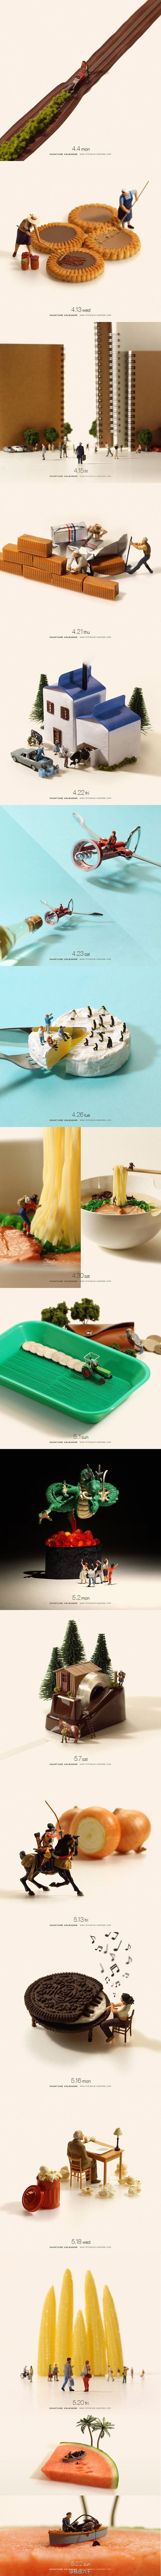 Uz malo mašte i kreativnost predmeti i hrana pretvaraju se u nešto posve drugačije